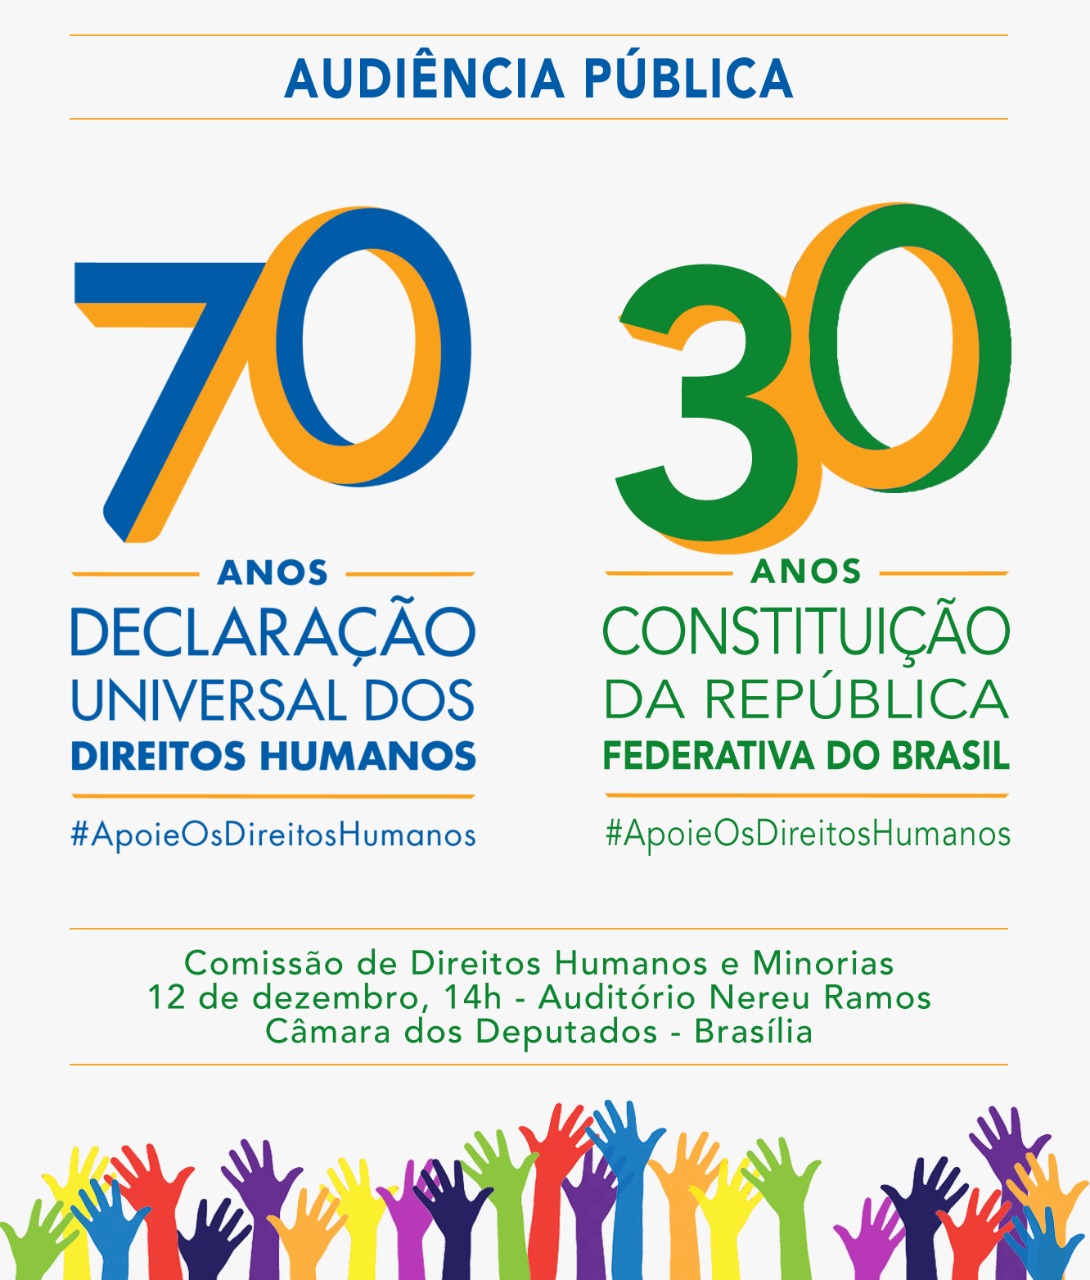 Leonardo Boff, ex-ministros e sociedade civil fazem evento sobre os 70 anos da Declaração Universal dos Direitos Humanos e os 30 anos da Constituição Federal